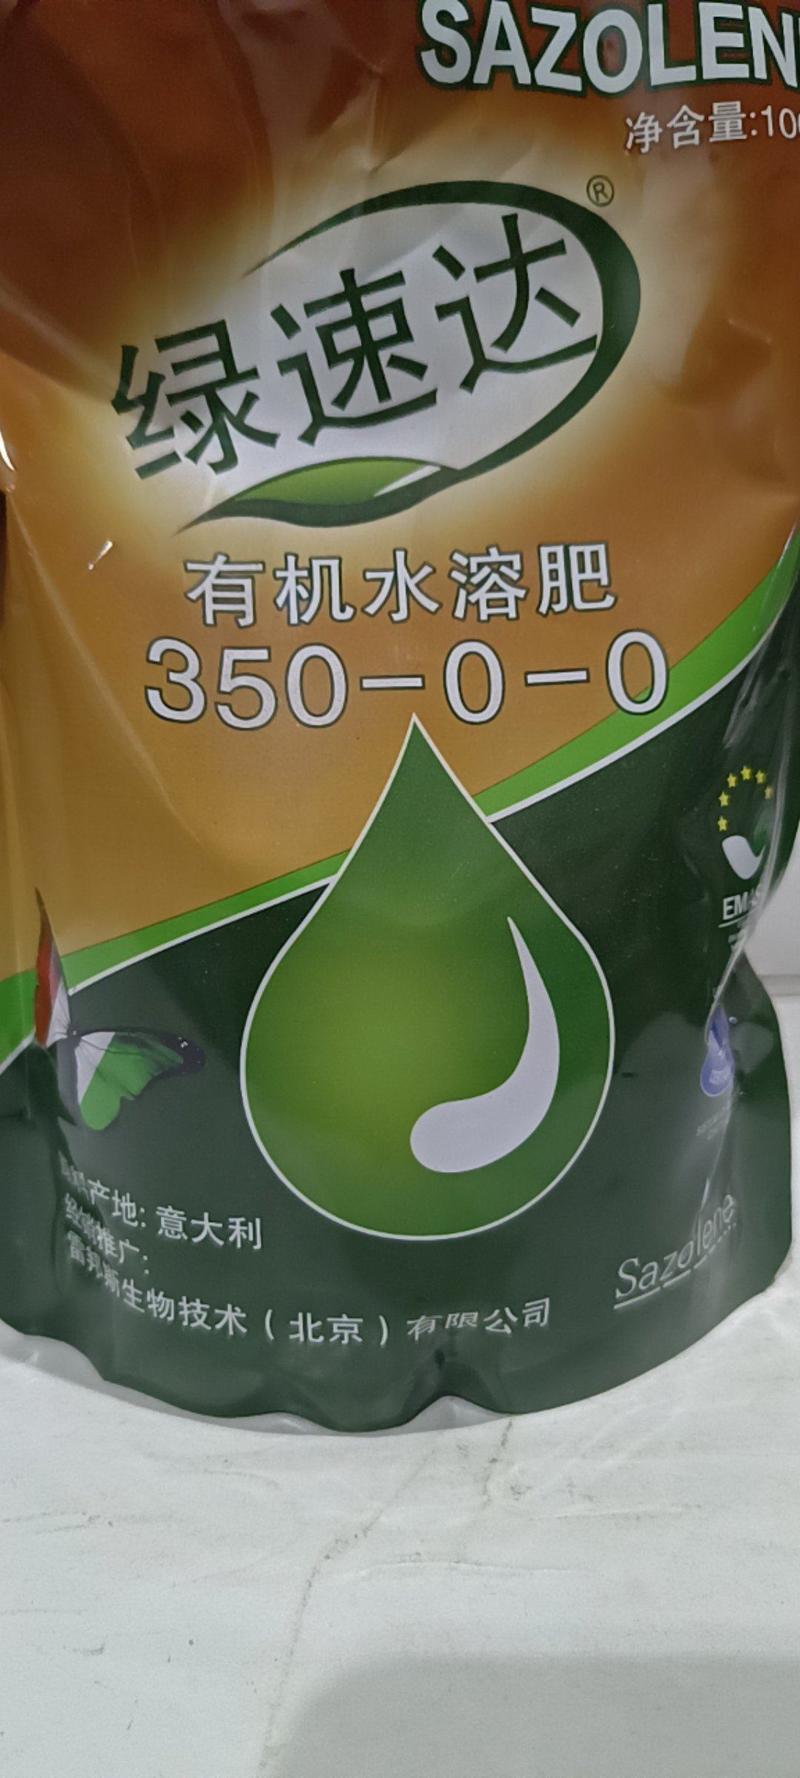 绿速宝缓释液体氮肥代替尿素持效期45-60天有效促进作物